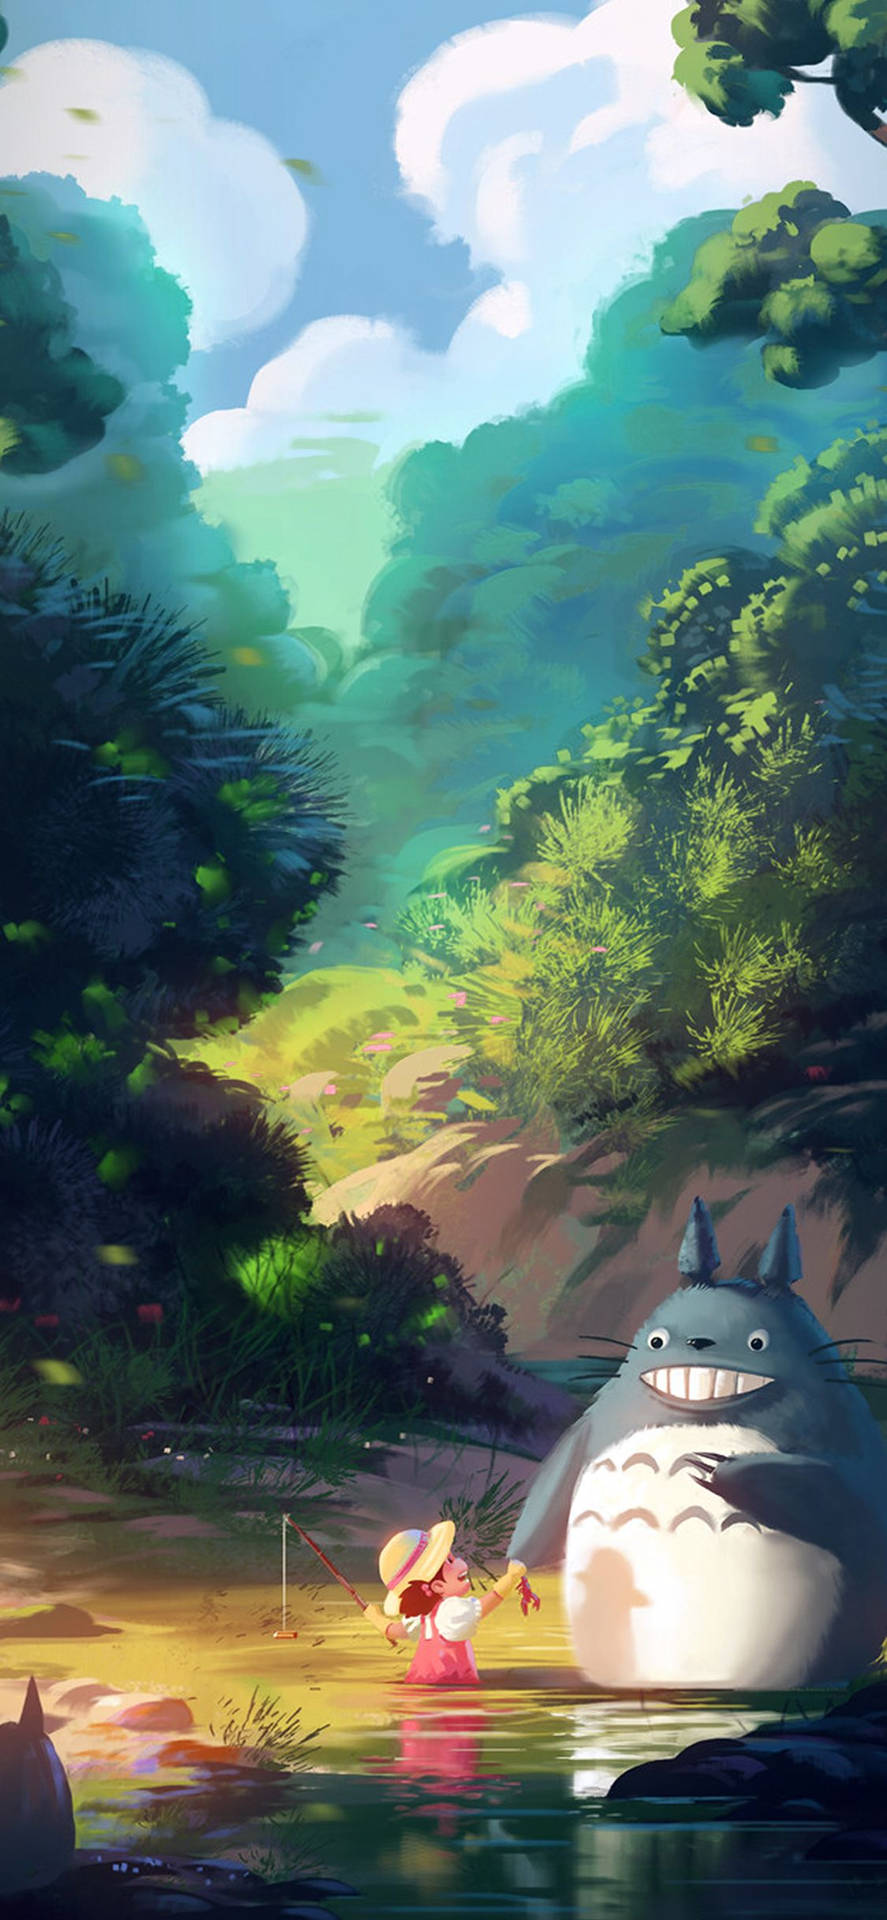 Studio Ghibli Iphone My Neighbor Totoro Background